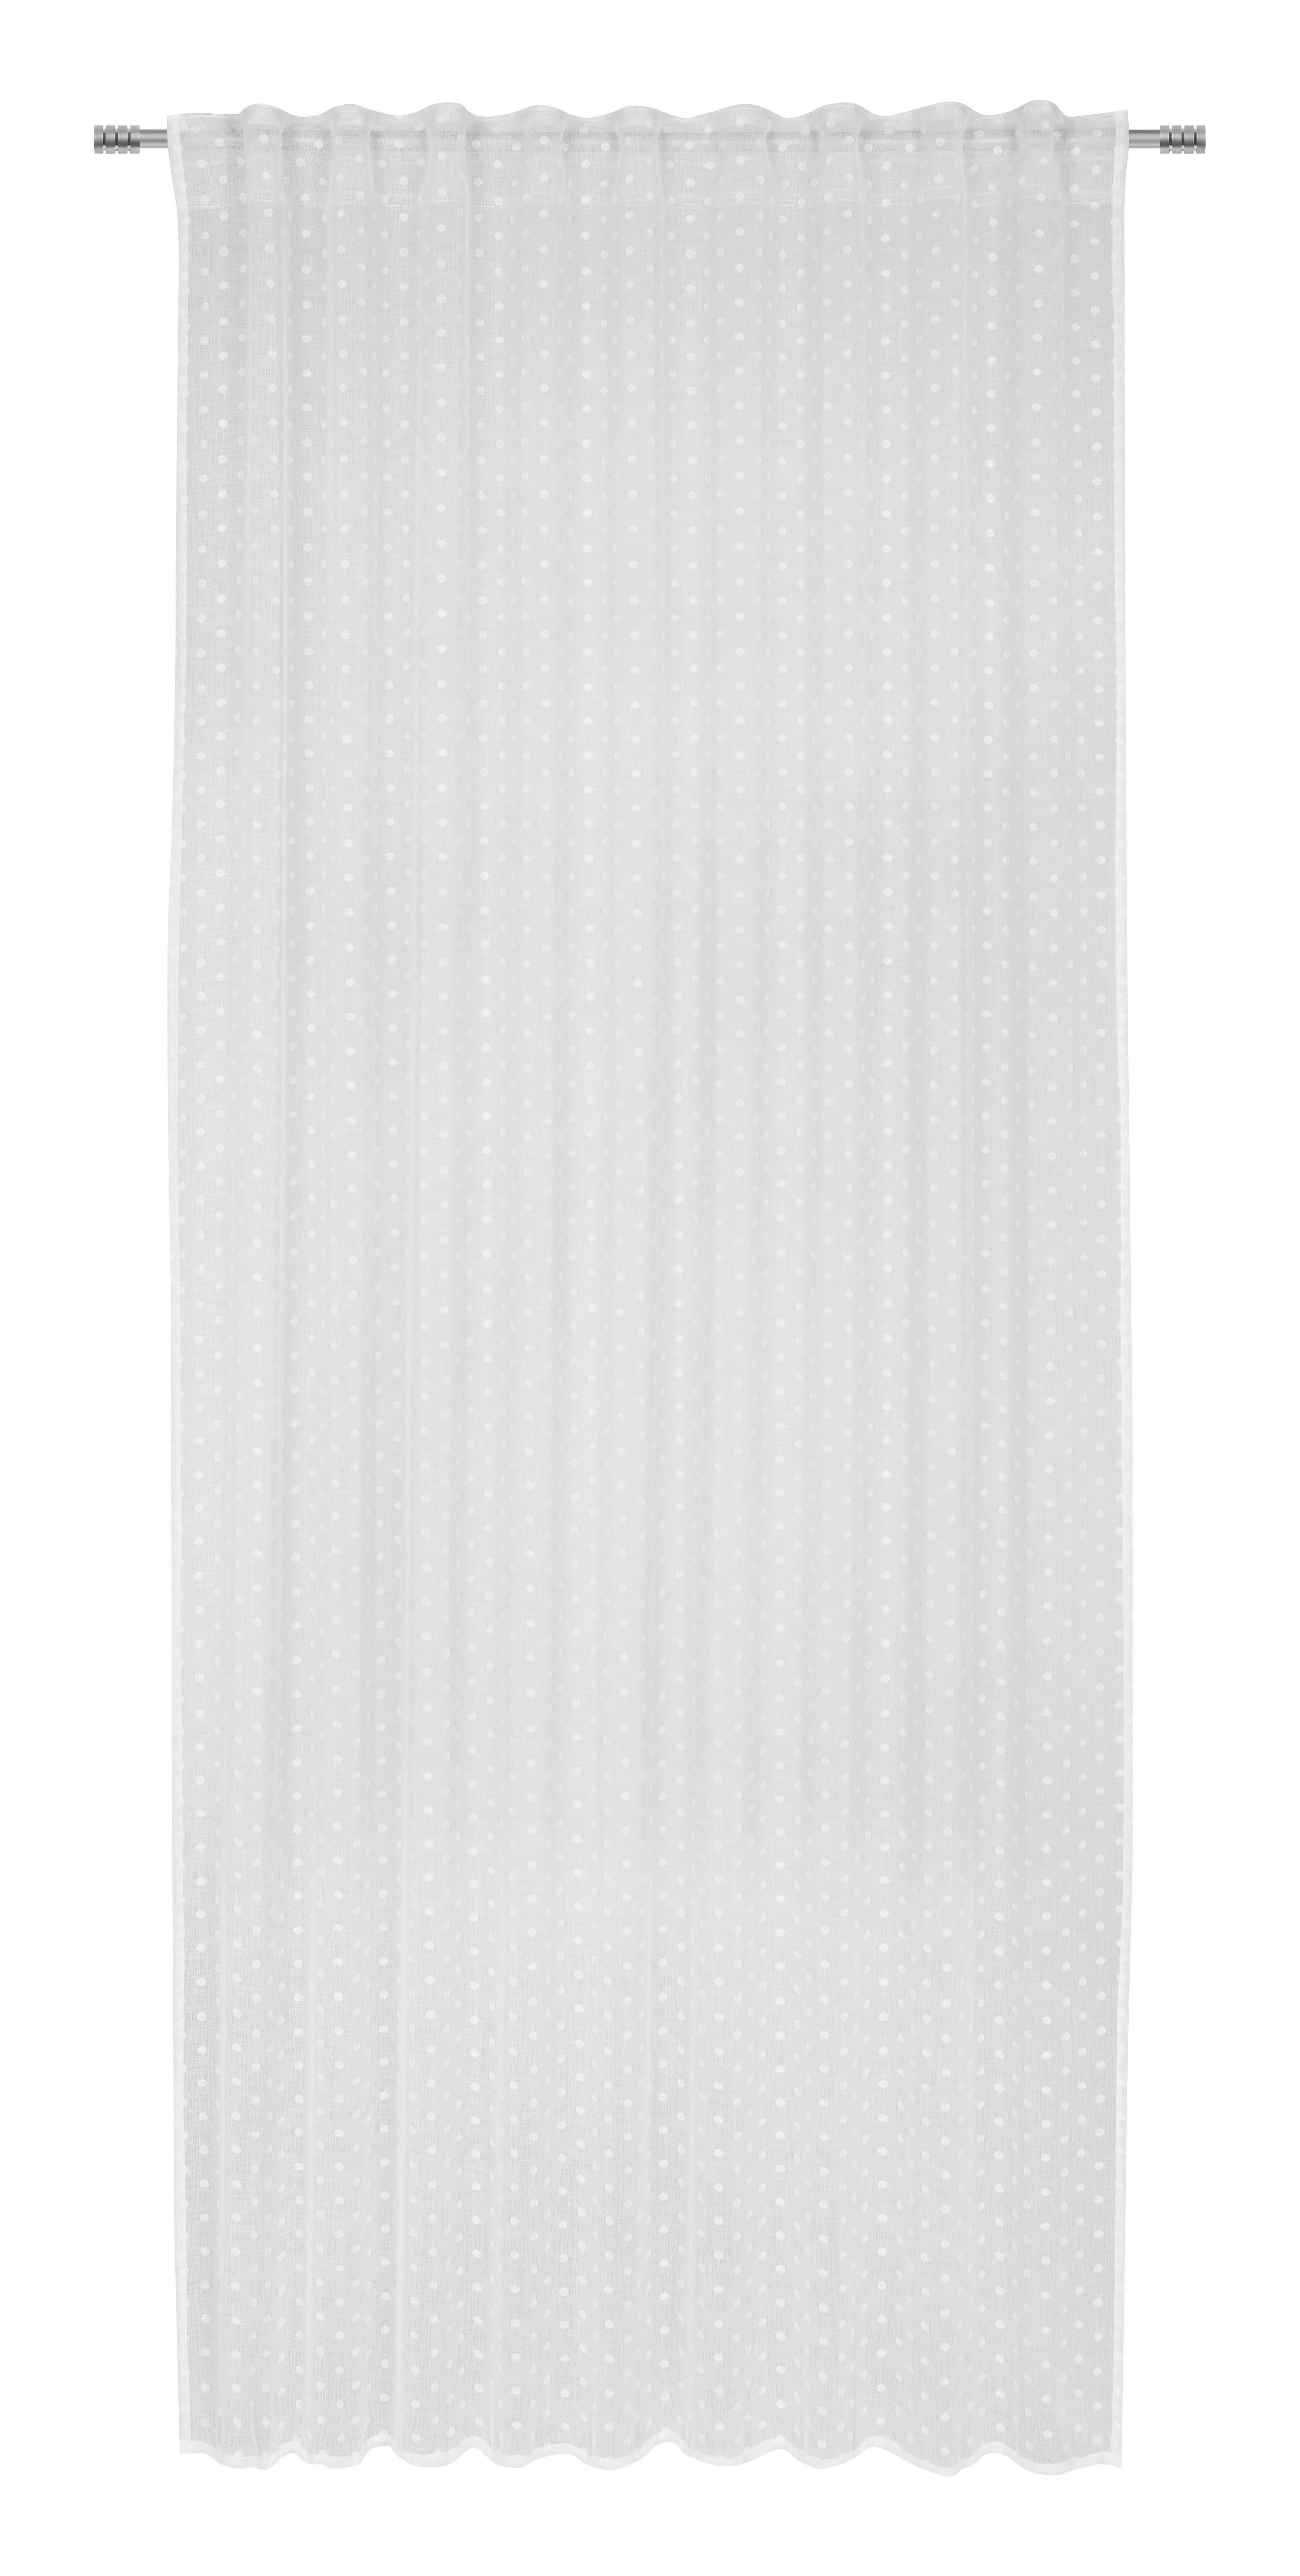 Fertigvorhang Sherly in Weiß ca. 140x245cm - Weiß, KONVENTIONELL, Textil (140/245cm) - Modern Living